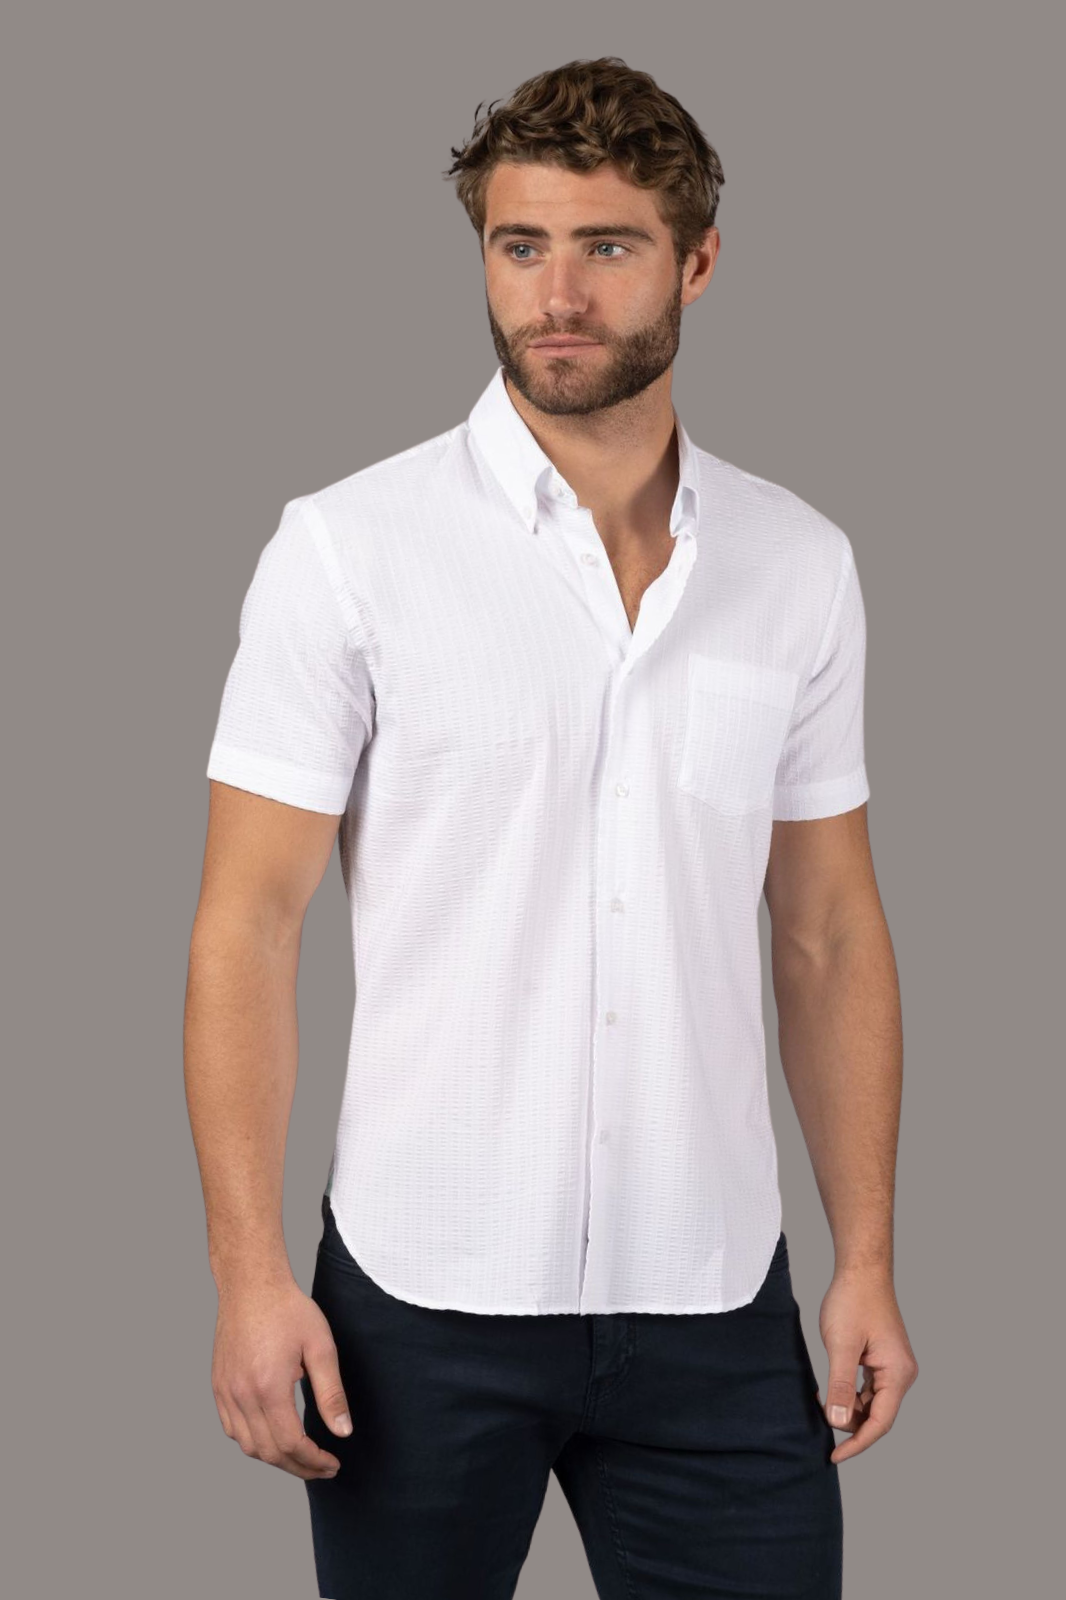 White with Seer Sucker Stripe Shirt